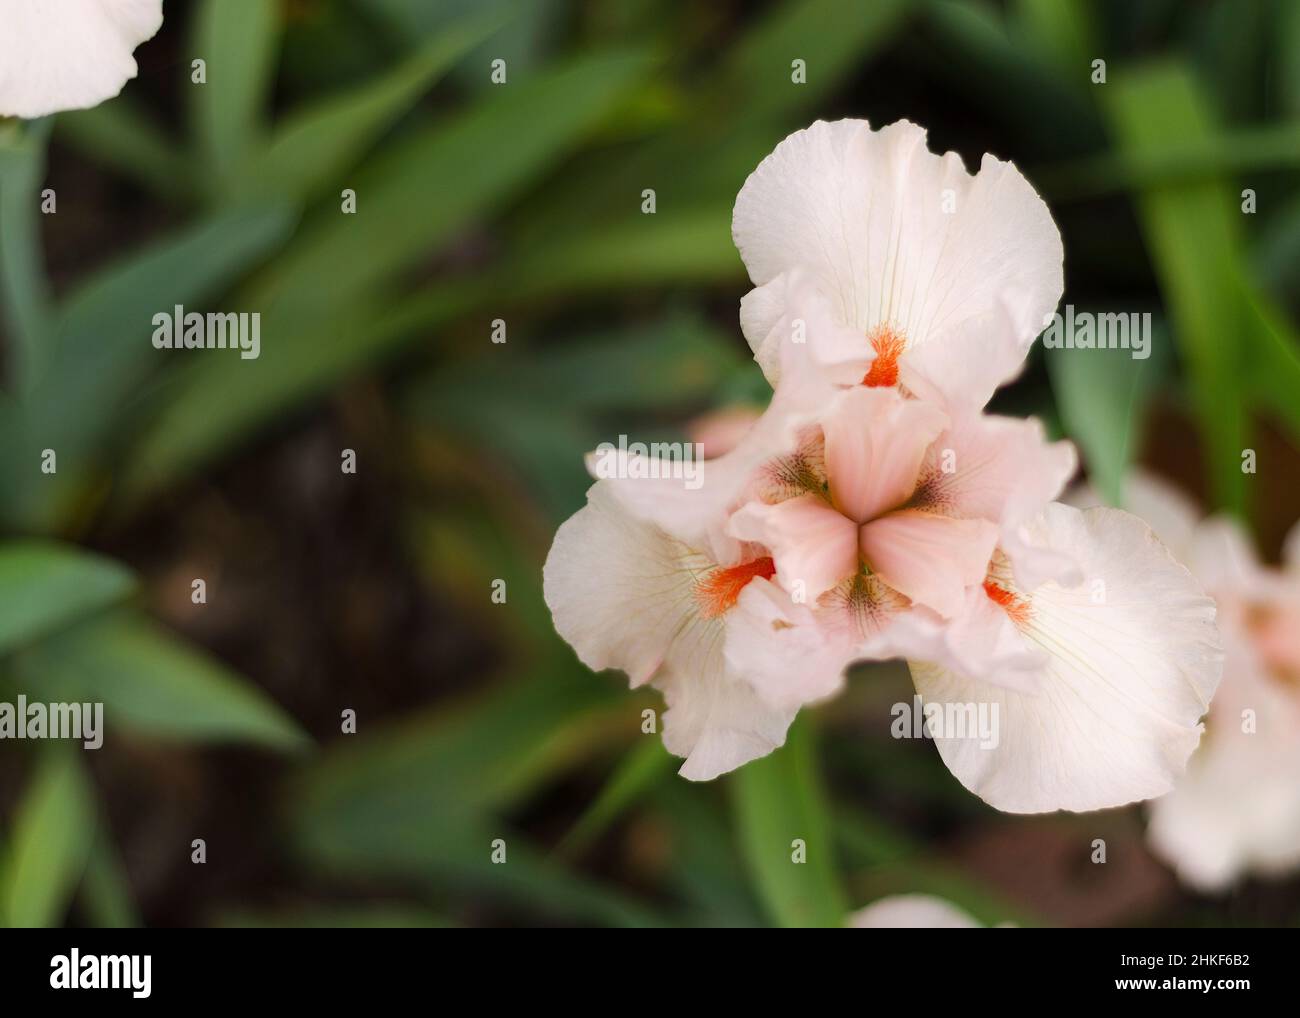 Im Garten wächst die Irisblume. Nahaufnahme einer Blumeniris auf unscharfem grünem, natürlichem Hintergrund. Voller Bloom-Trend. Stockfoto